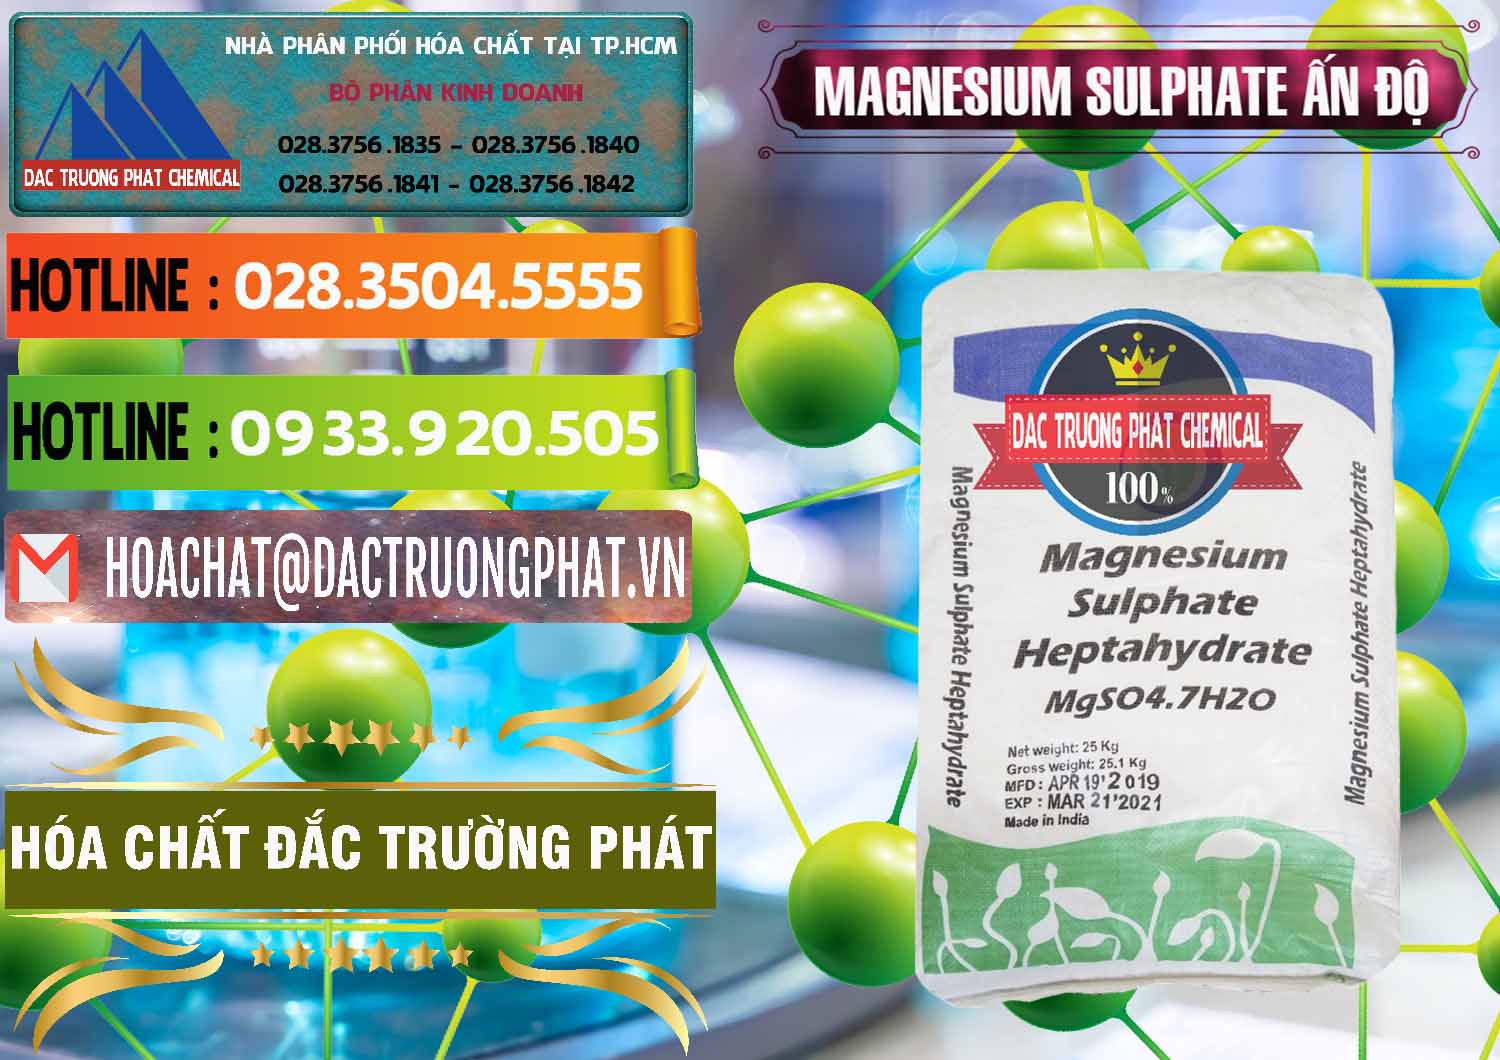 Cty kinh doanh và bán MGSO4.7H2O – Magnesium Sulphate Heptahydrate Ấn Độ India - 0362 - Cty chuyên cung cấp & bán hóa chất tại TP.HCM - cungcaphoachat.com.vn